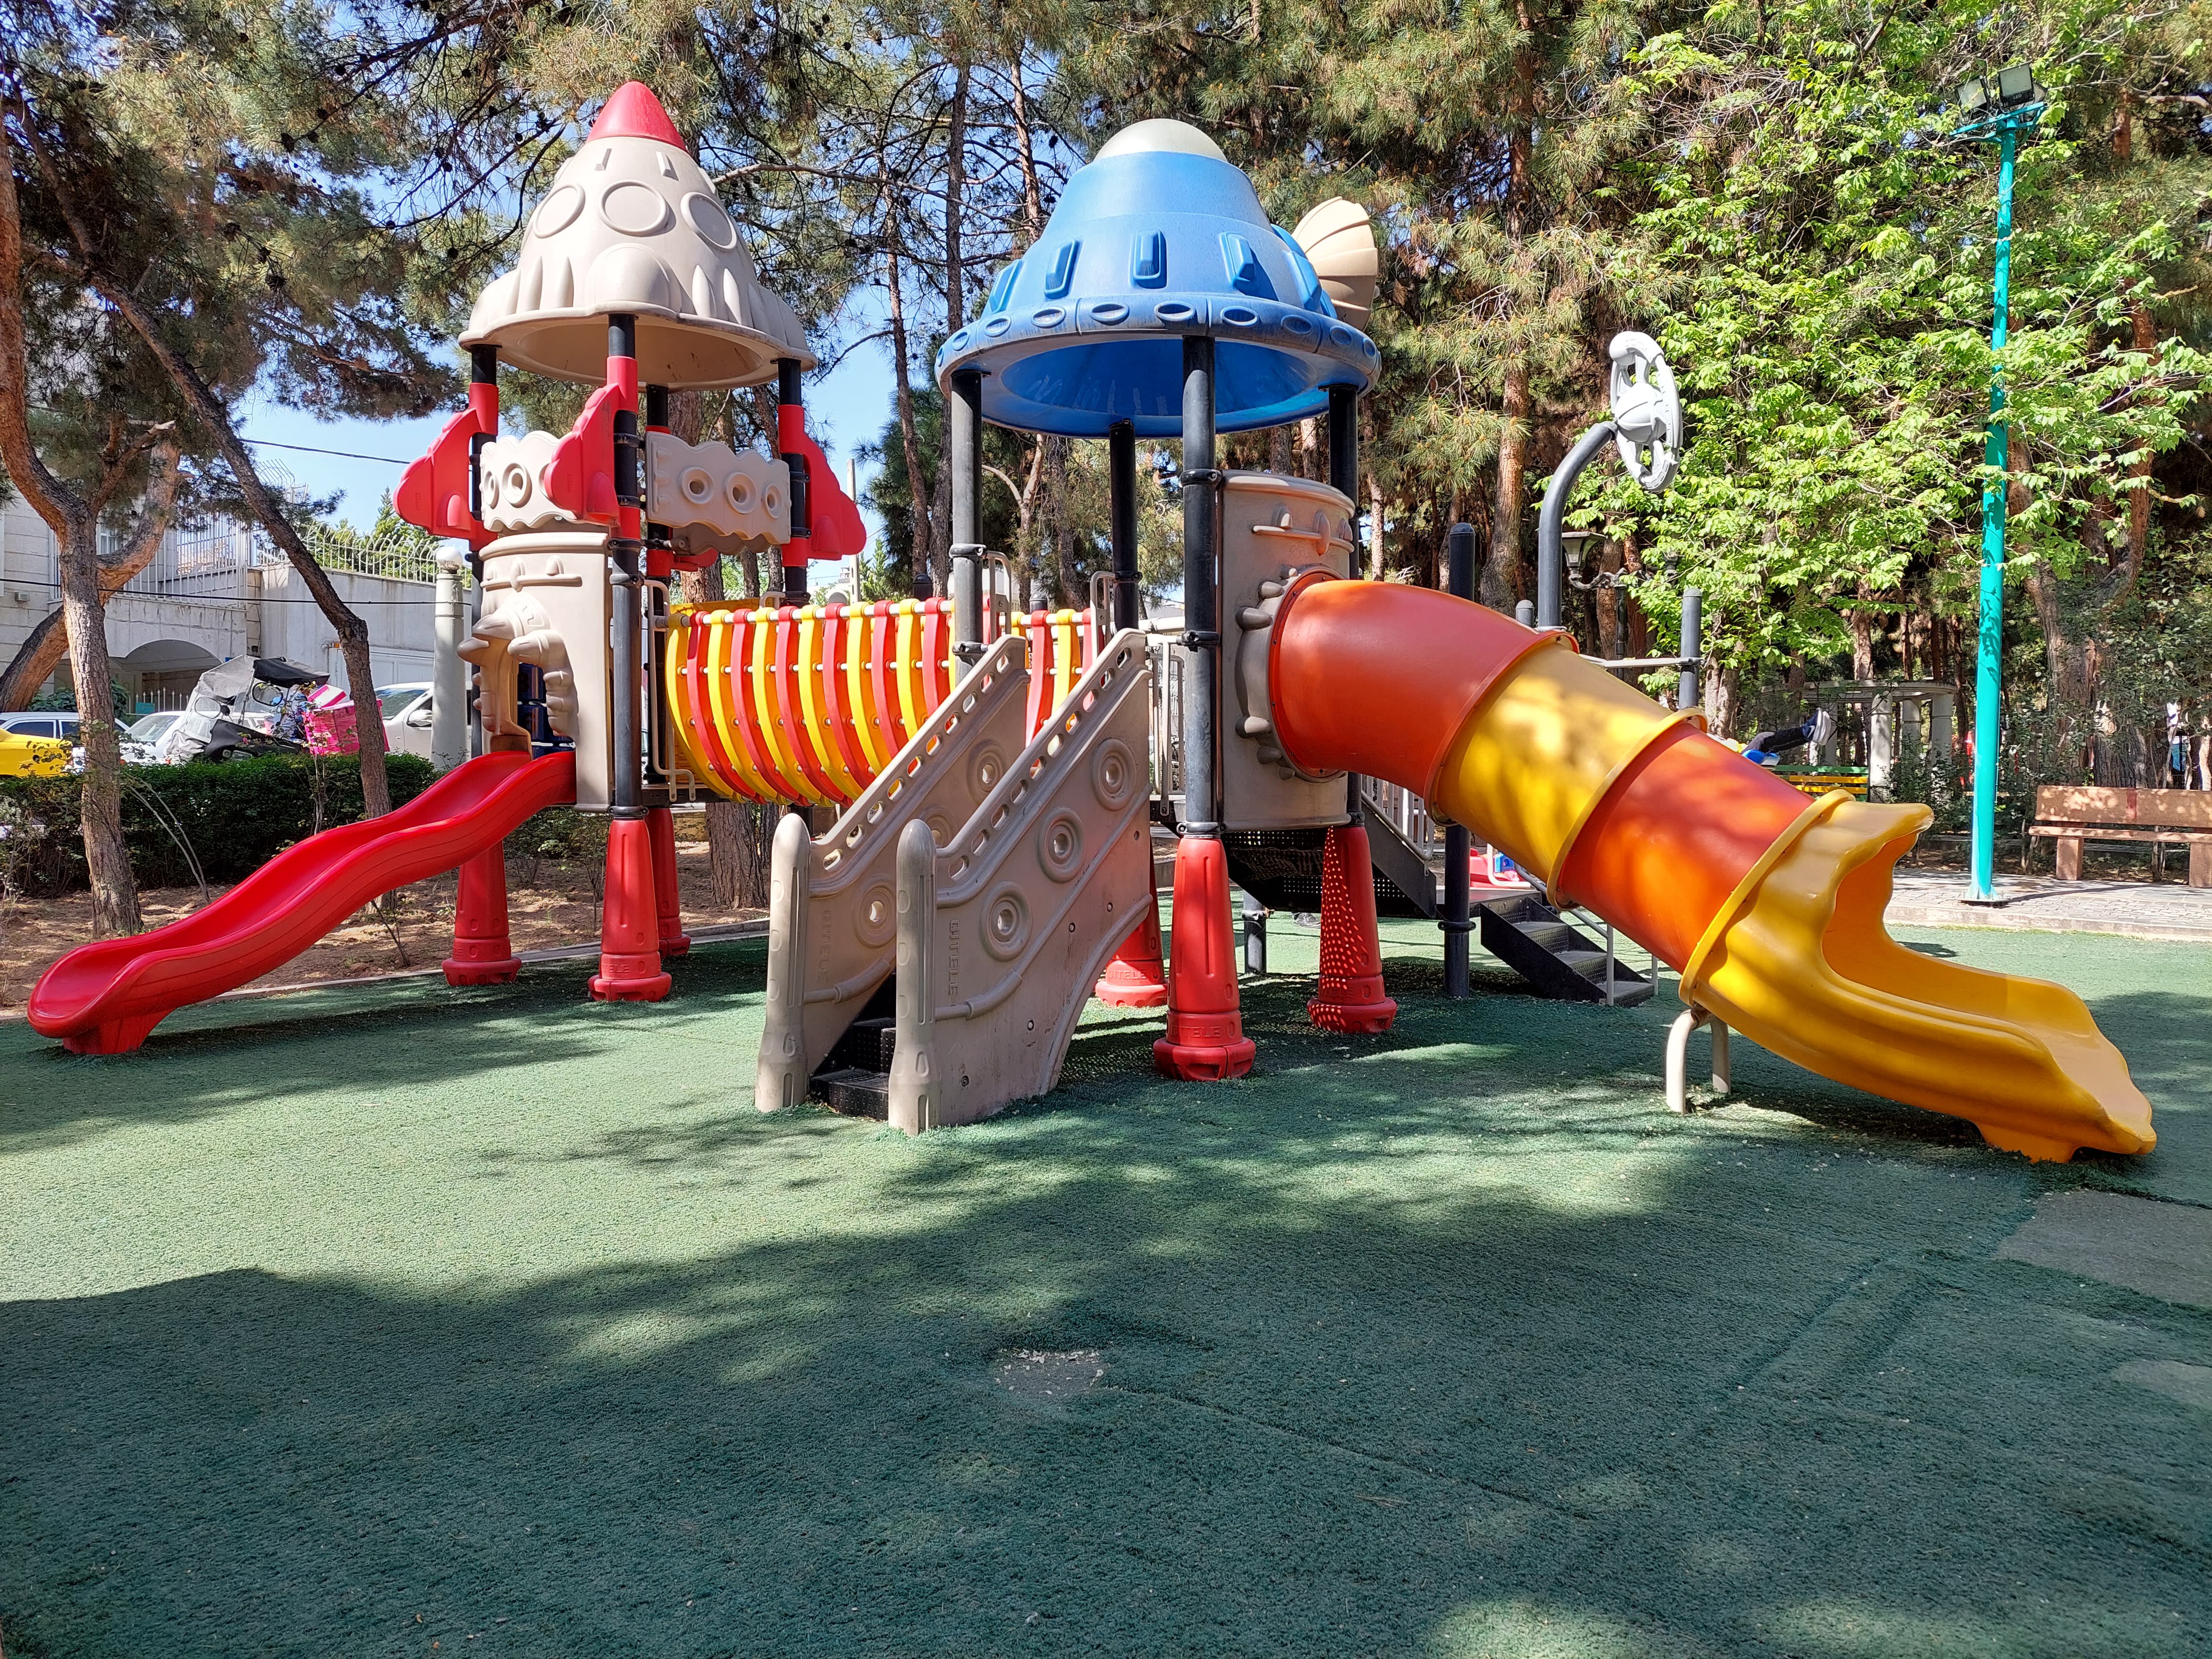 عکس نمونه دوربین واید گلکسی A52 در نور مناسب - زمین بازی کودک در پارک صبا خیابان جردن